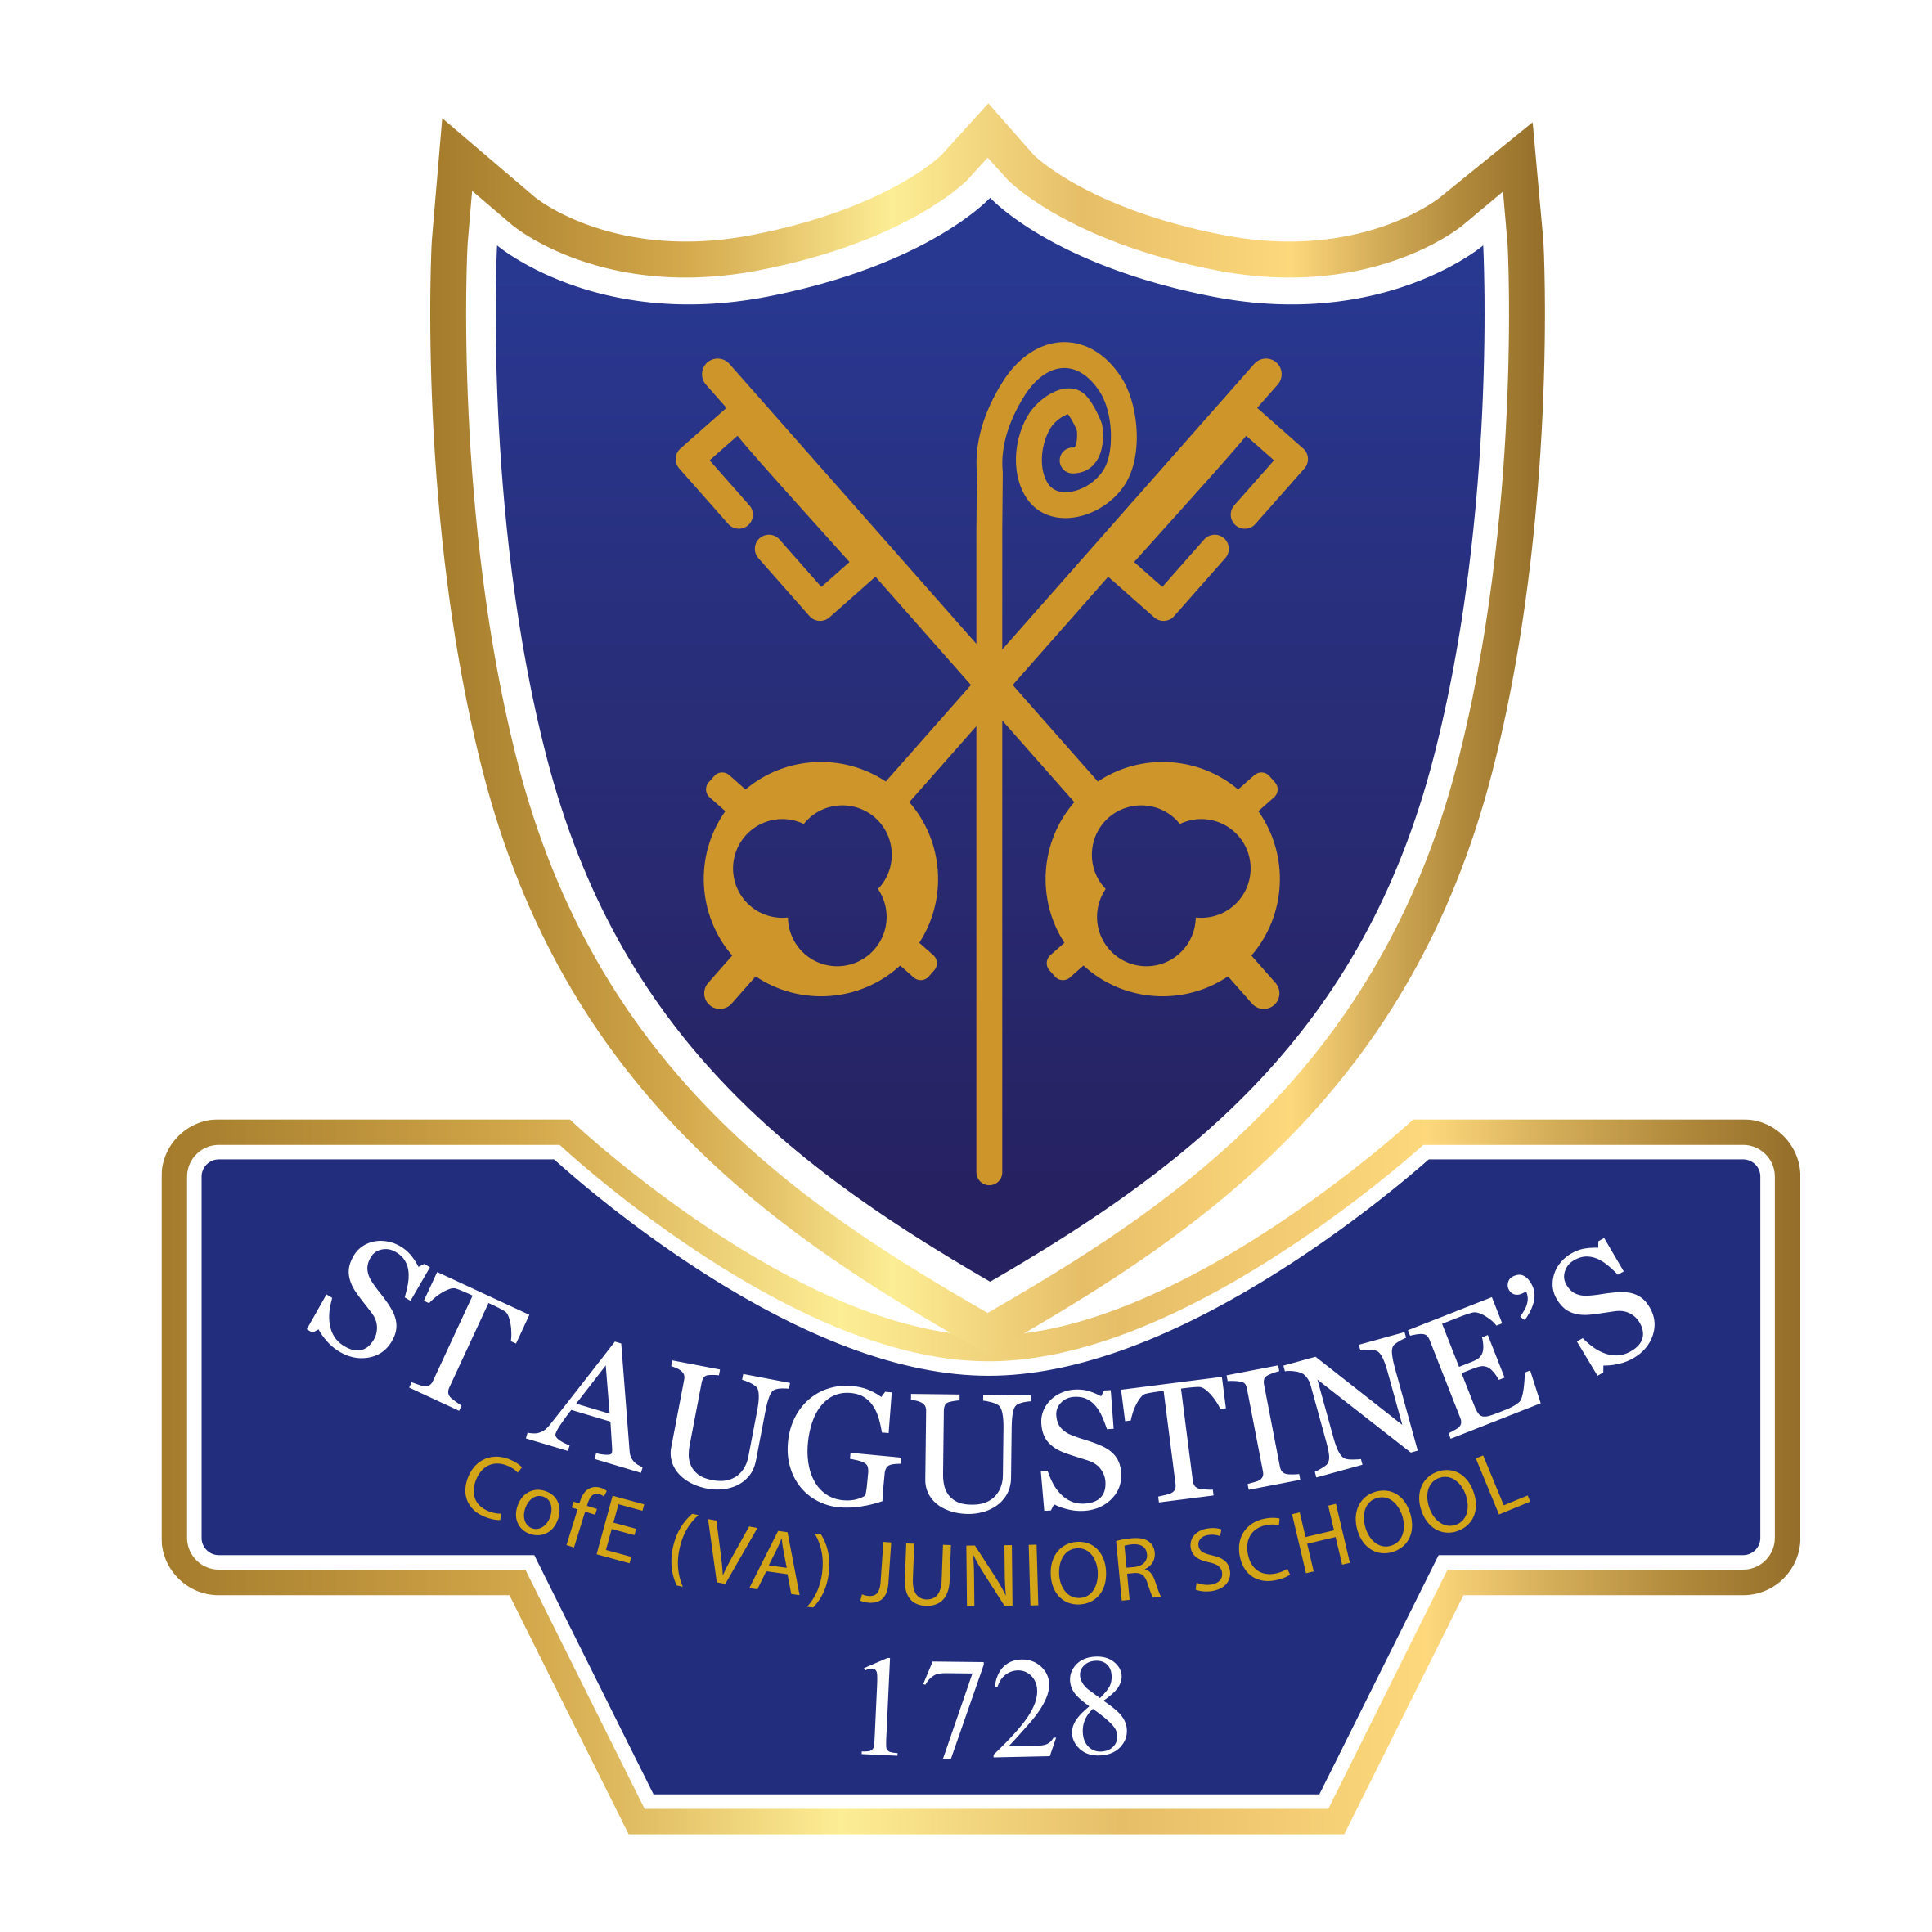 St Augustine's C Of E (VA) Junior School Peterborough UK